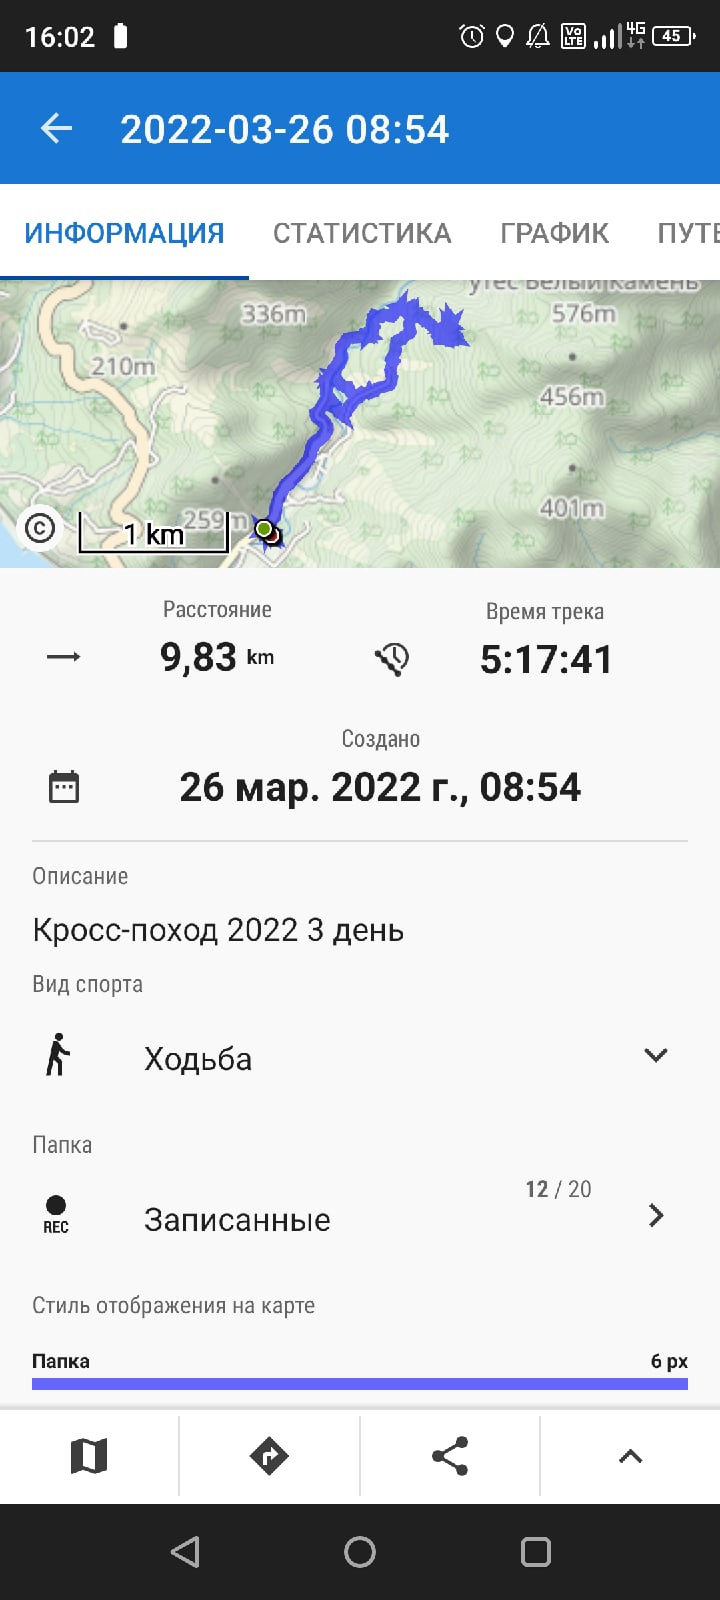 Городские соревнования «Кросс-поход 2022».